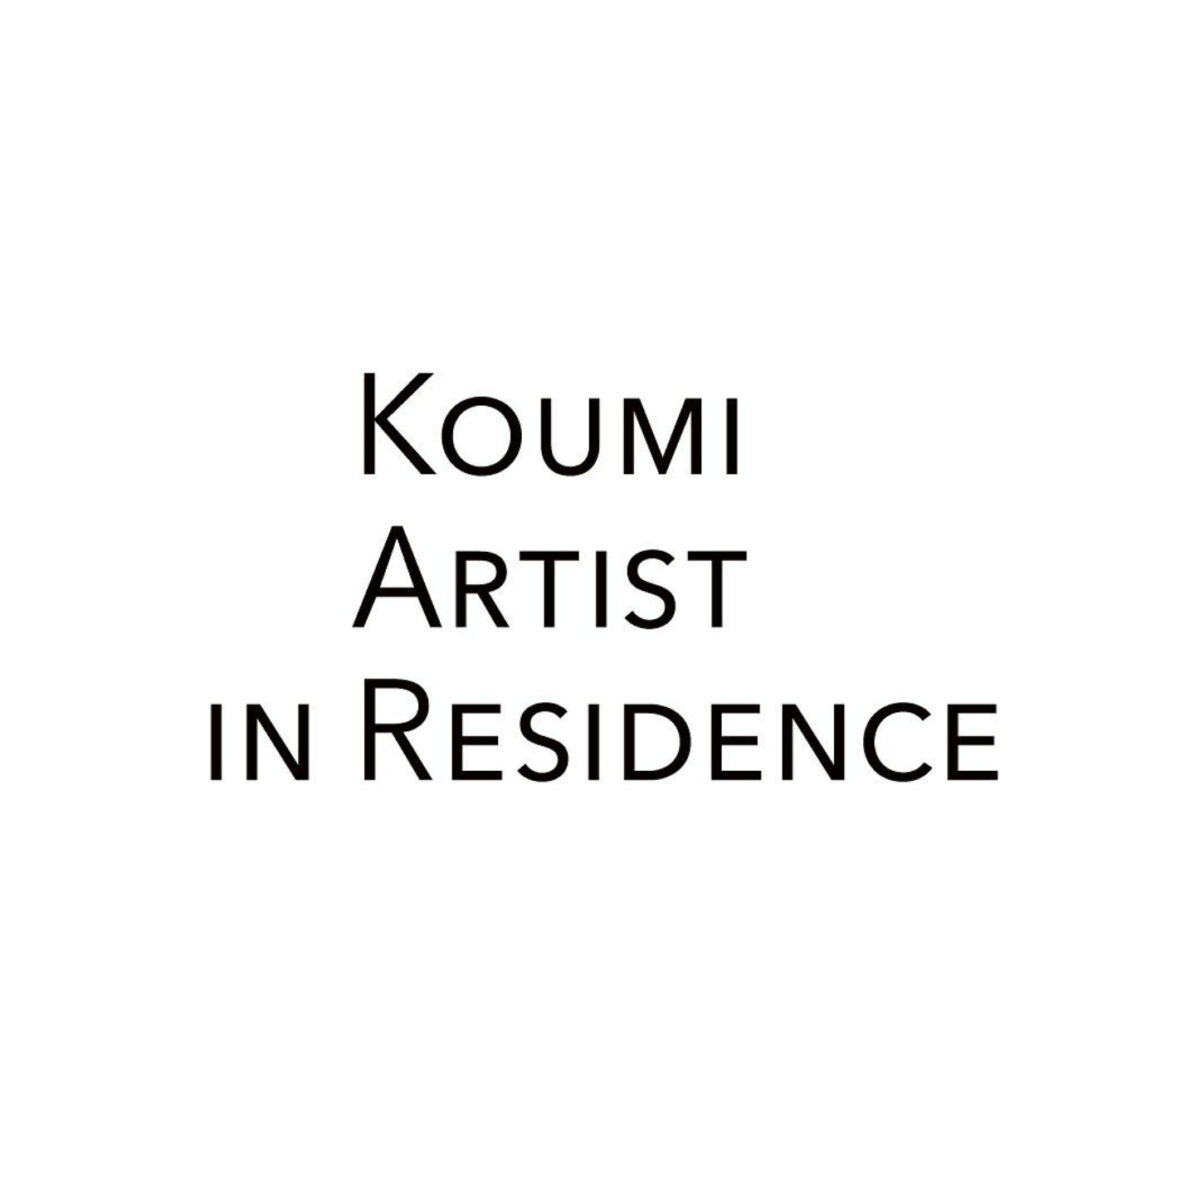 KOUMI ARTIST IN RESIDENCEの詳細を見る